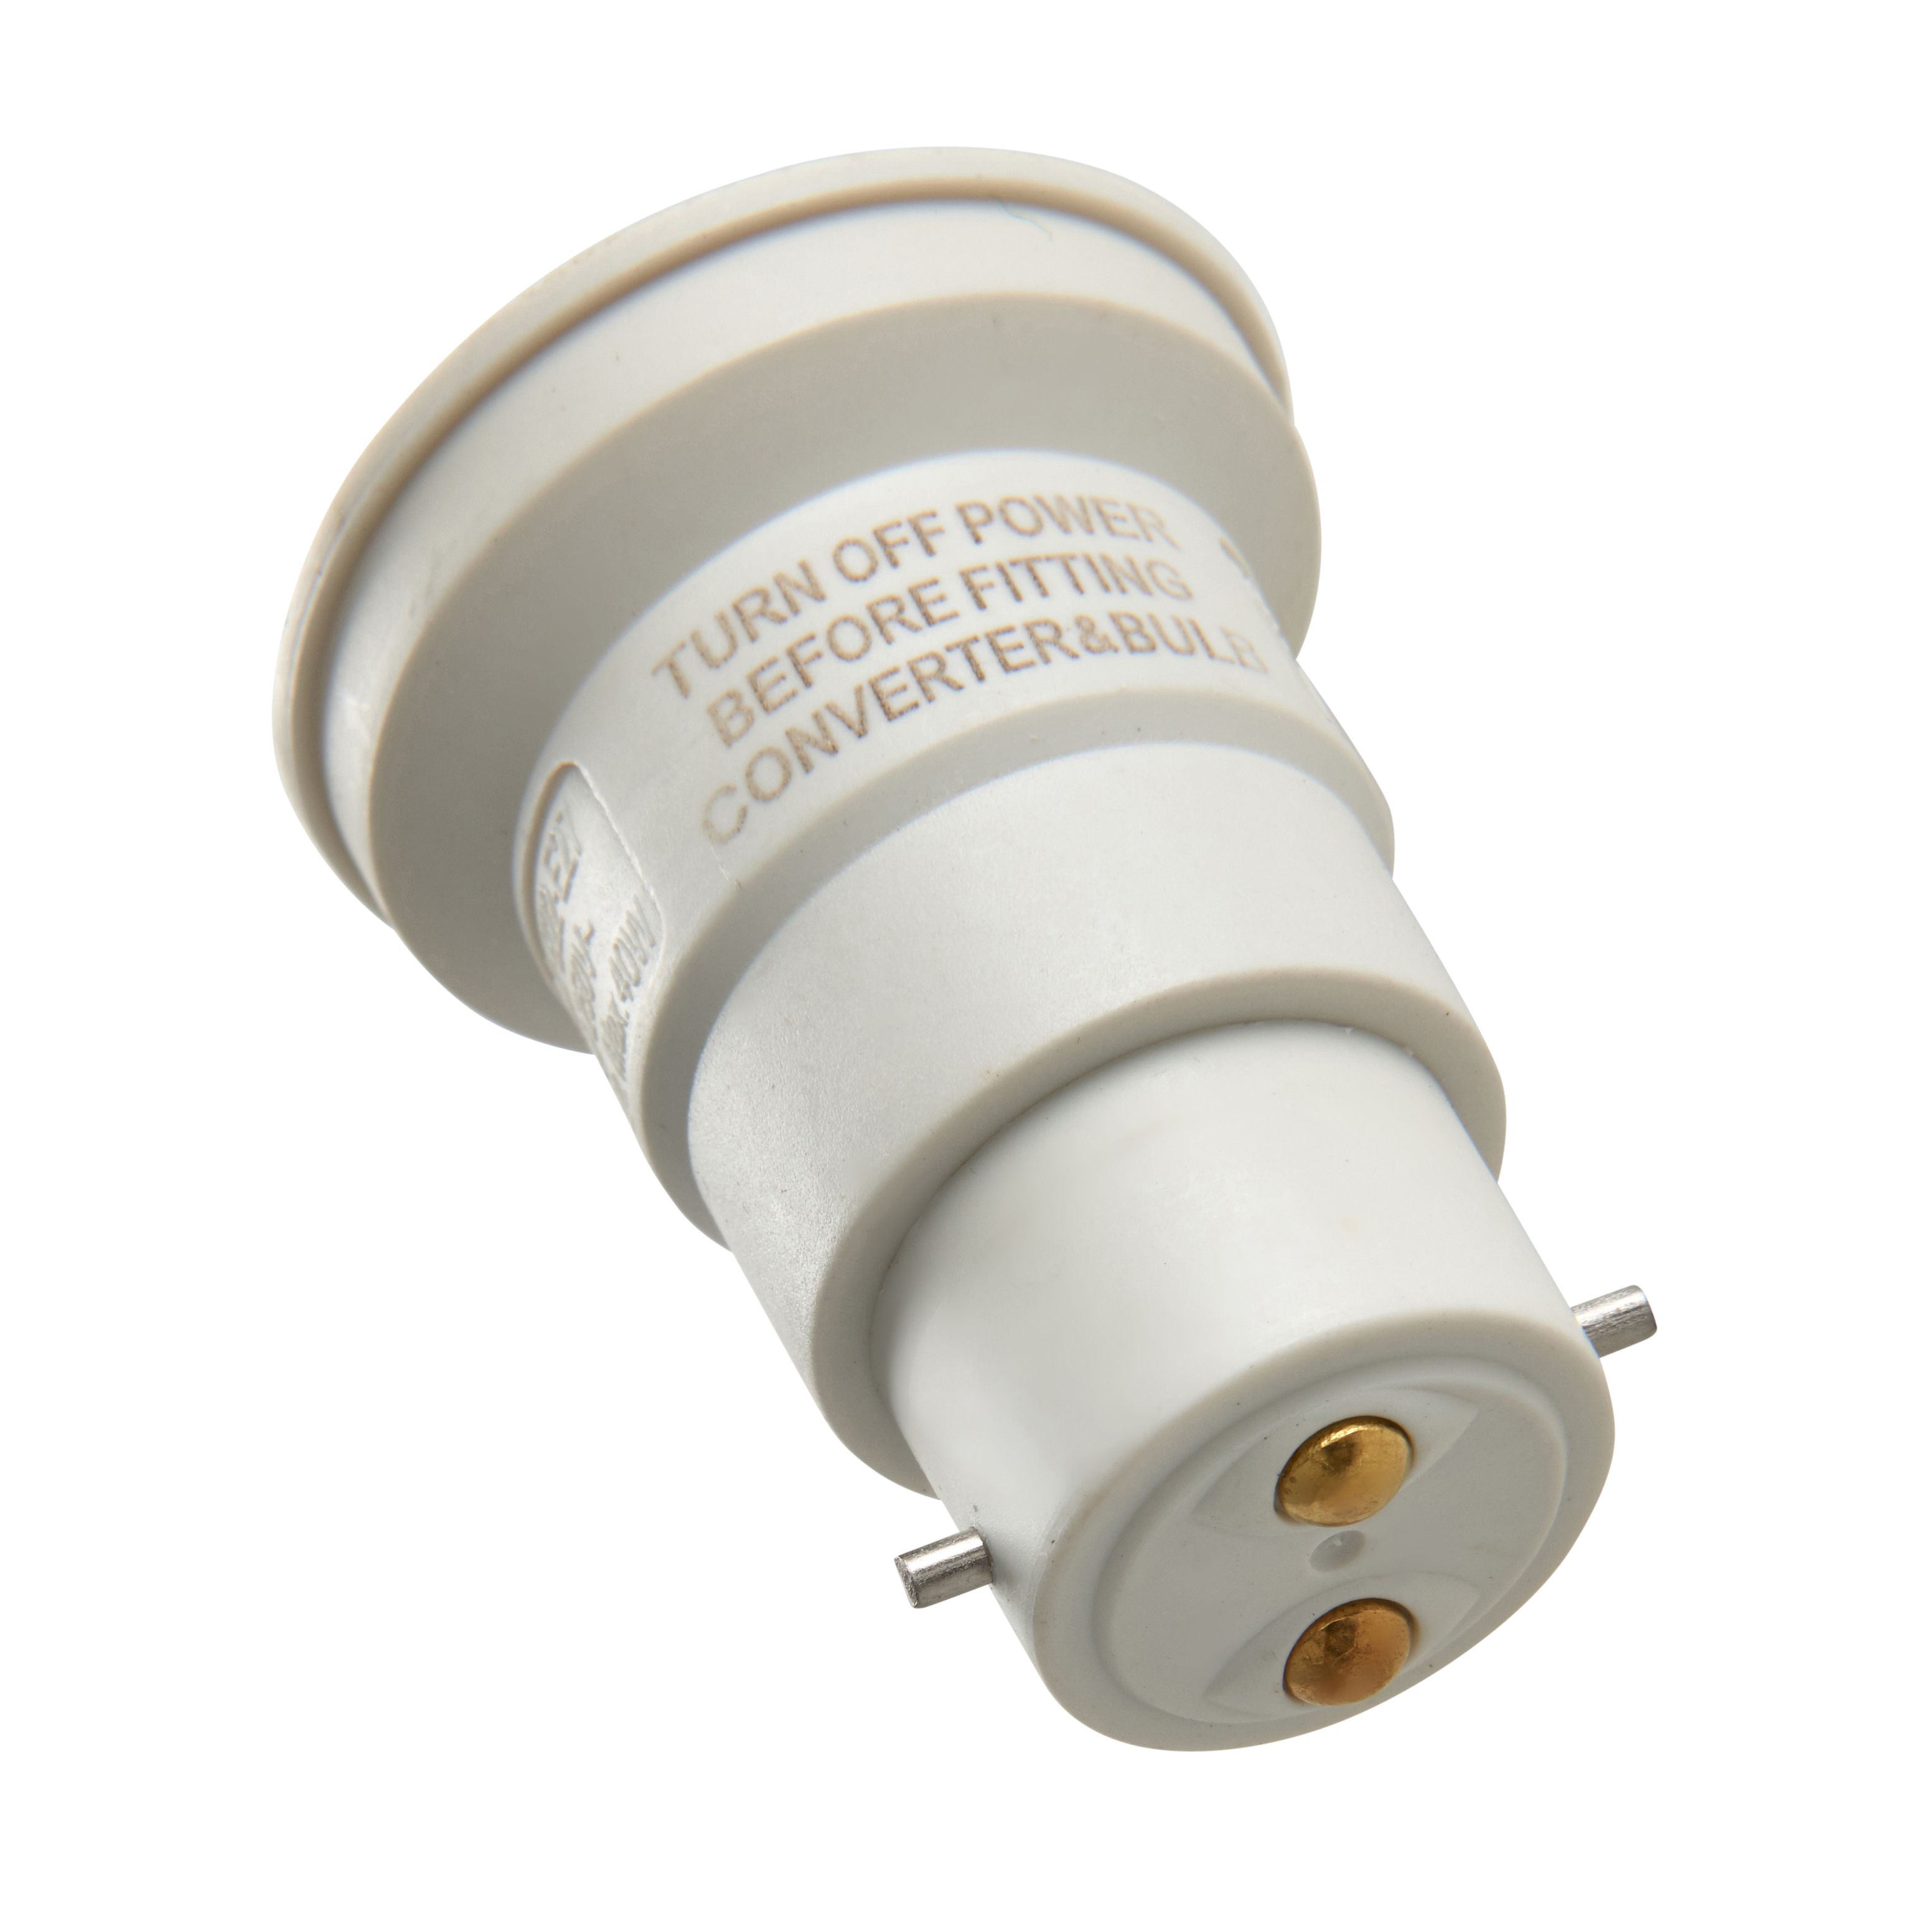 Masterlite B22 to E27 Light bulb cap converter, Pack of 2